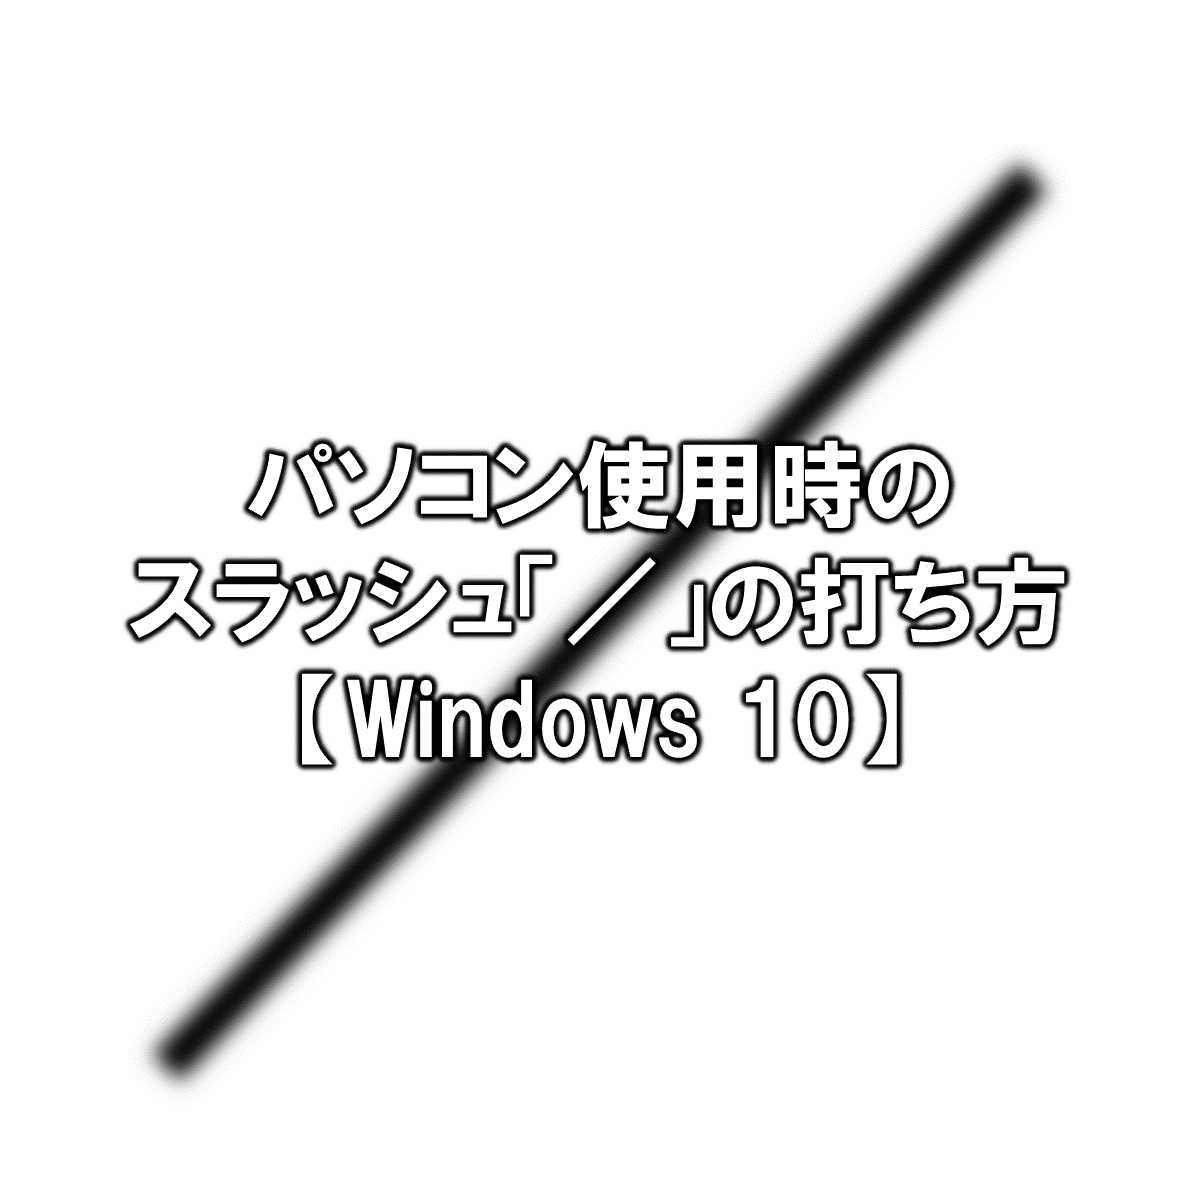 パソコン使用時のスラッシュ の打ち方 Windows10